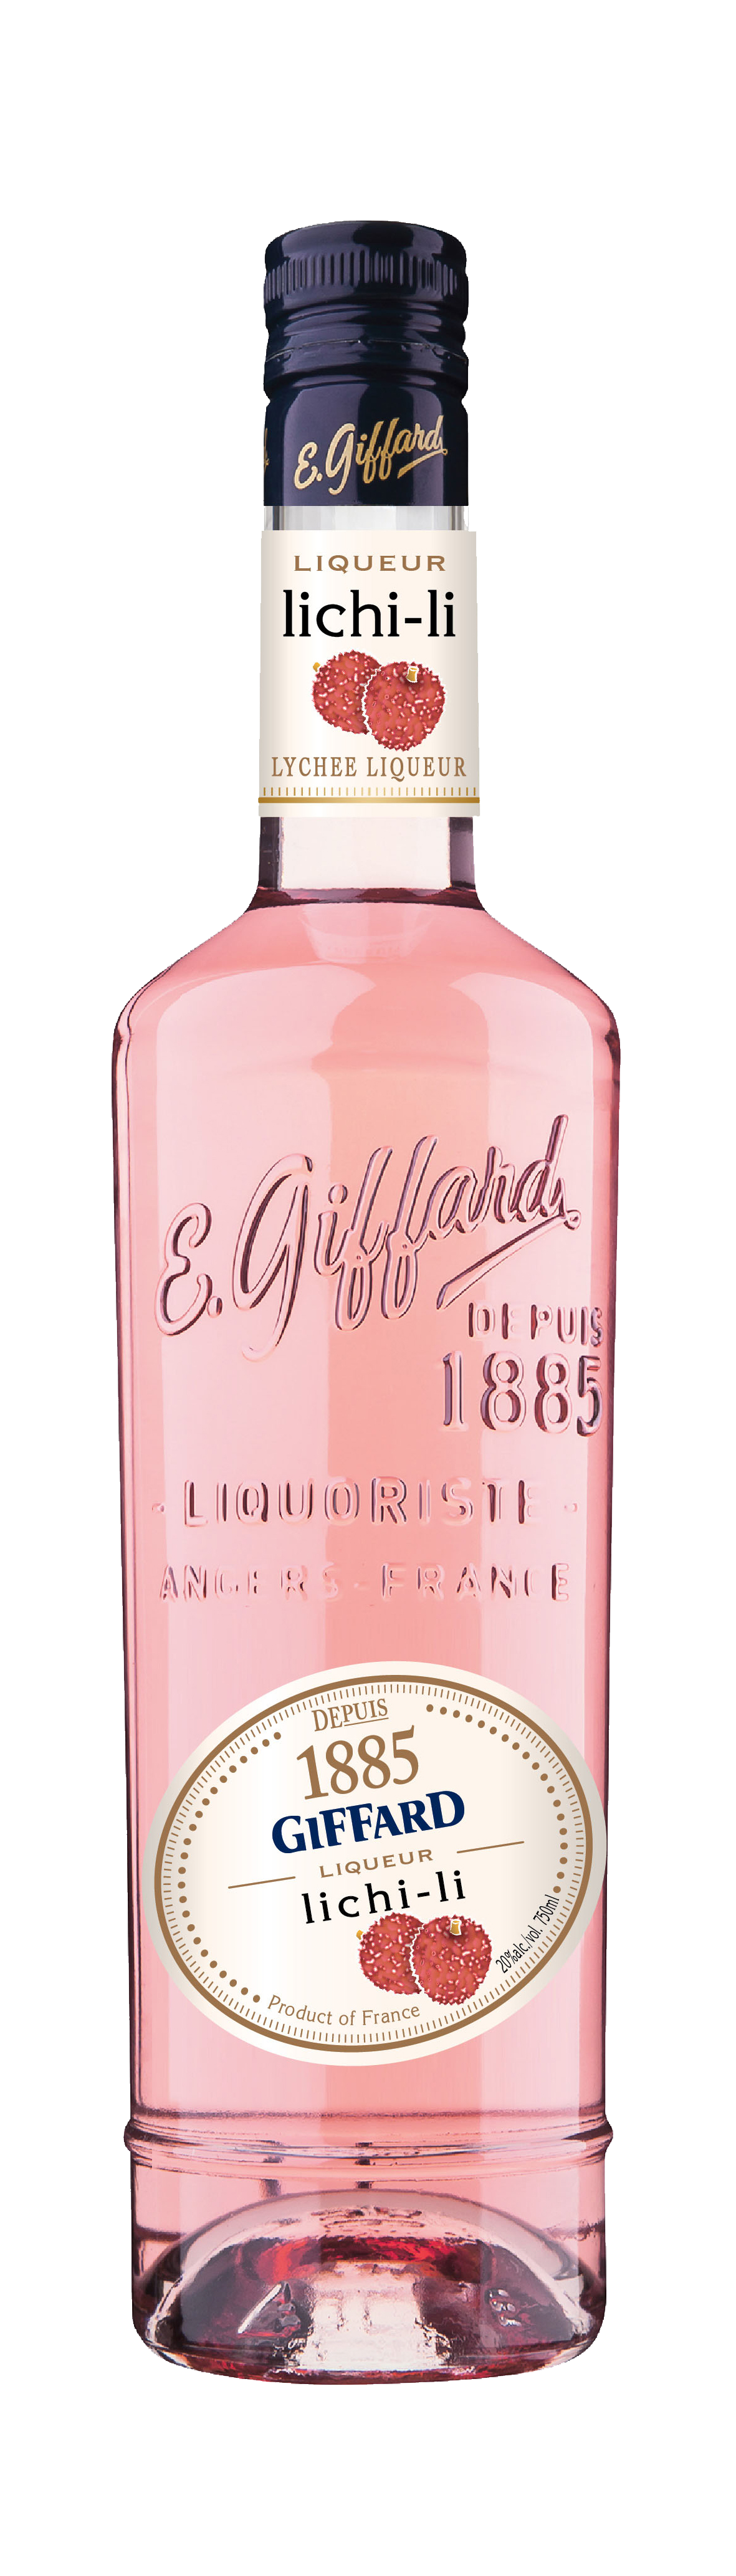 Pamplemousse (Pink Grapefruit), Giffard [STRAPPED] - Skurnik Wines & Spirits